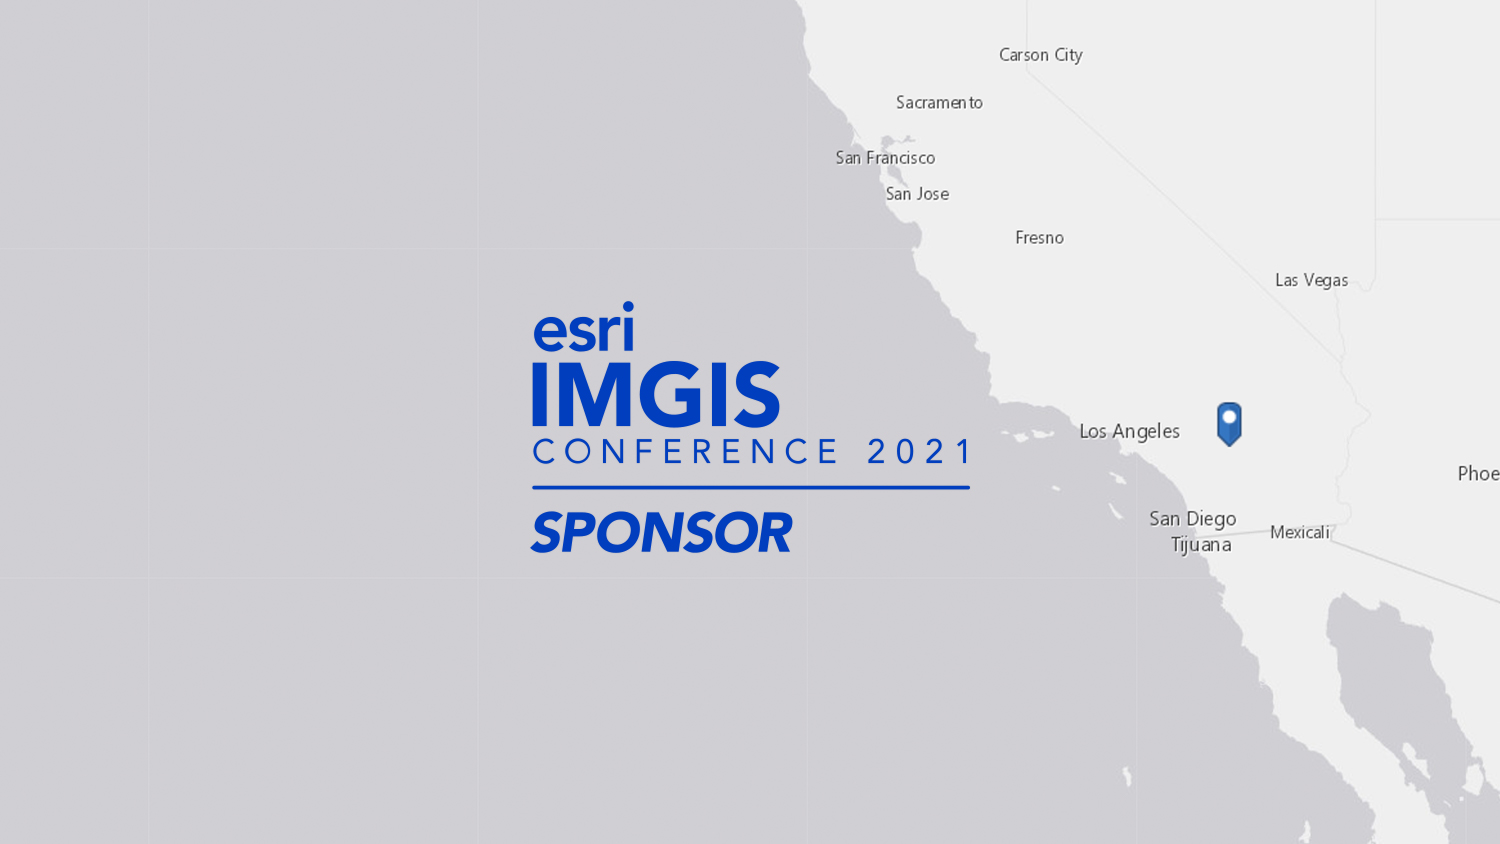 2021 Esri IMGIS is being held in Palm Springs, California (map)